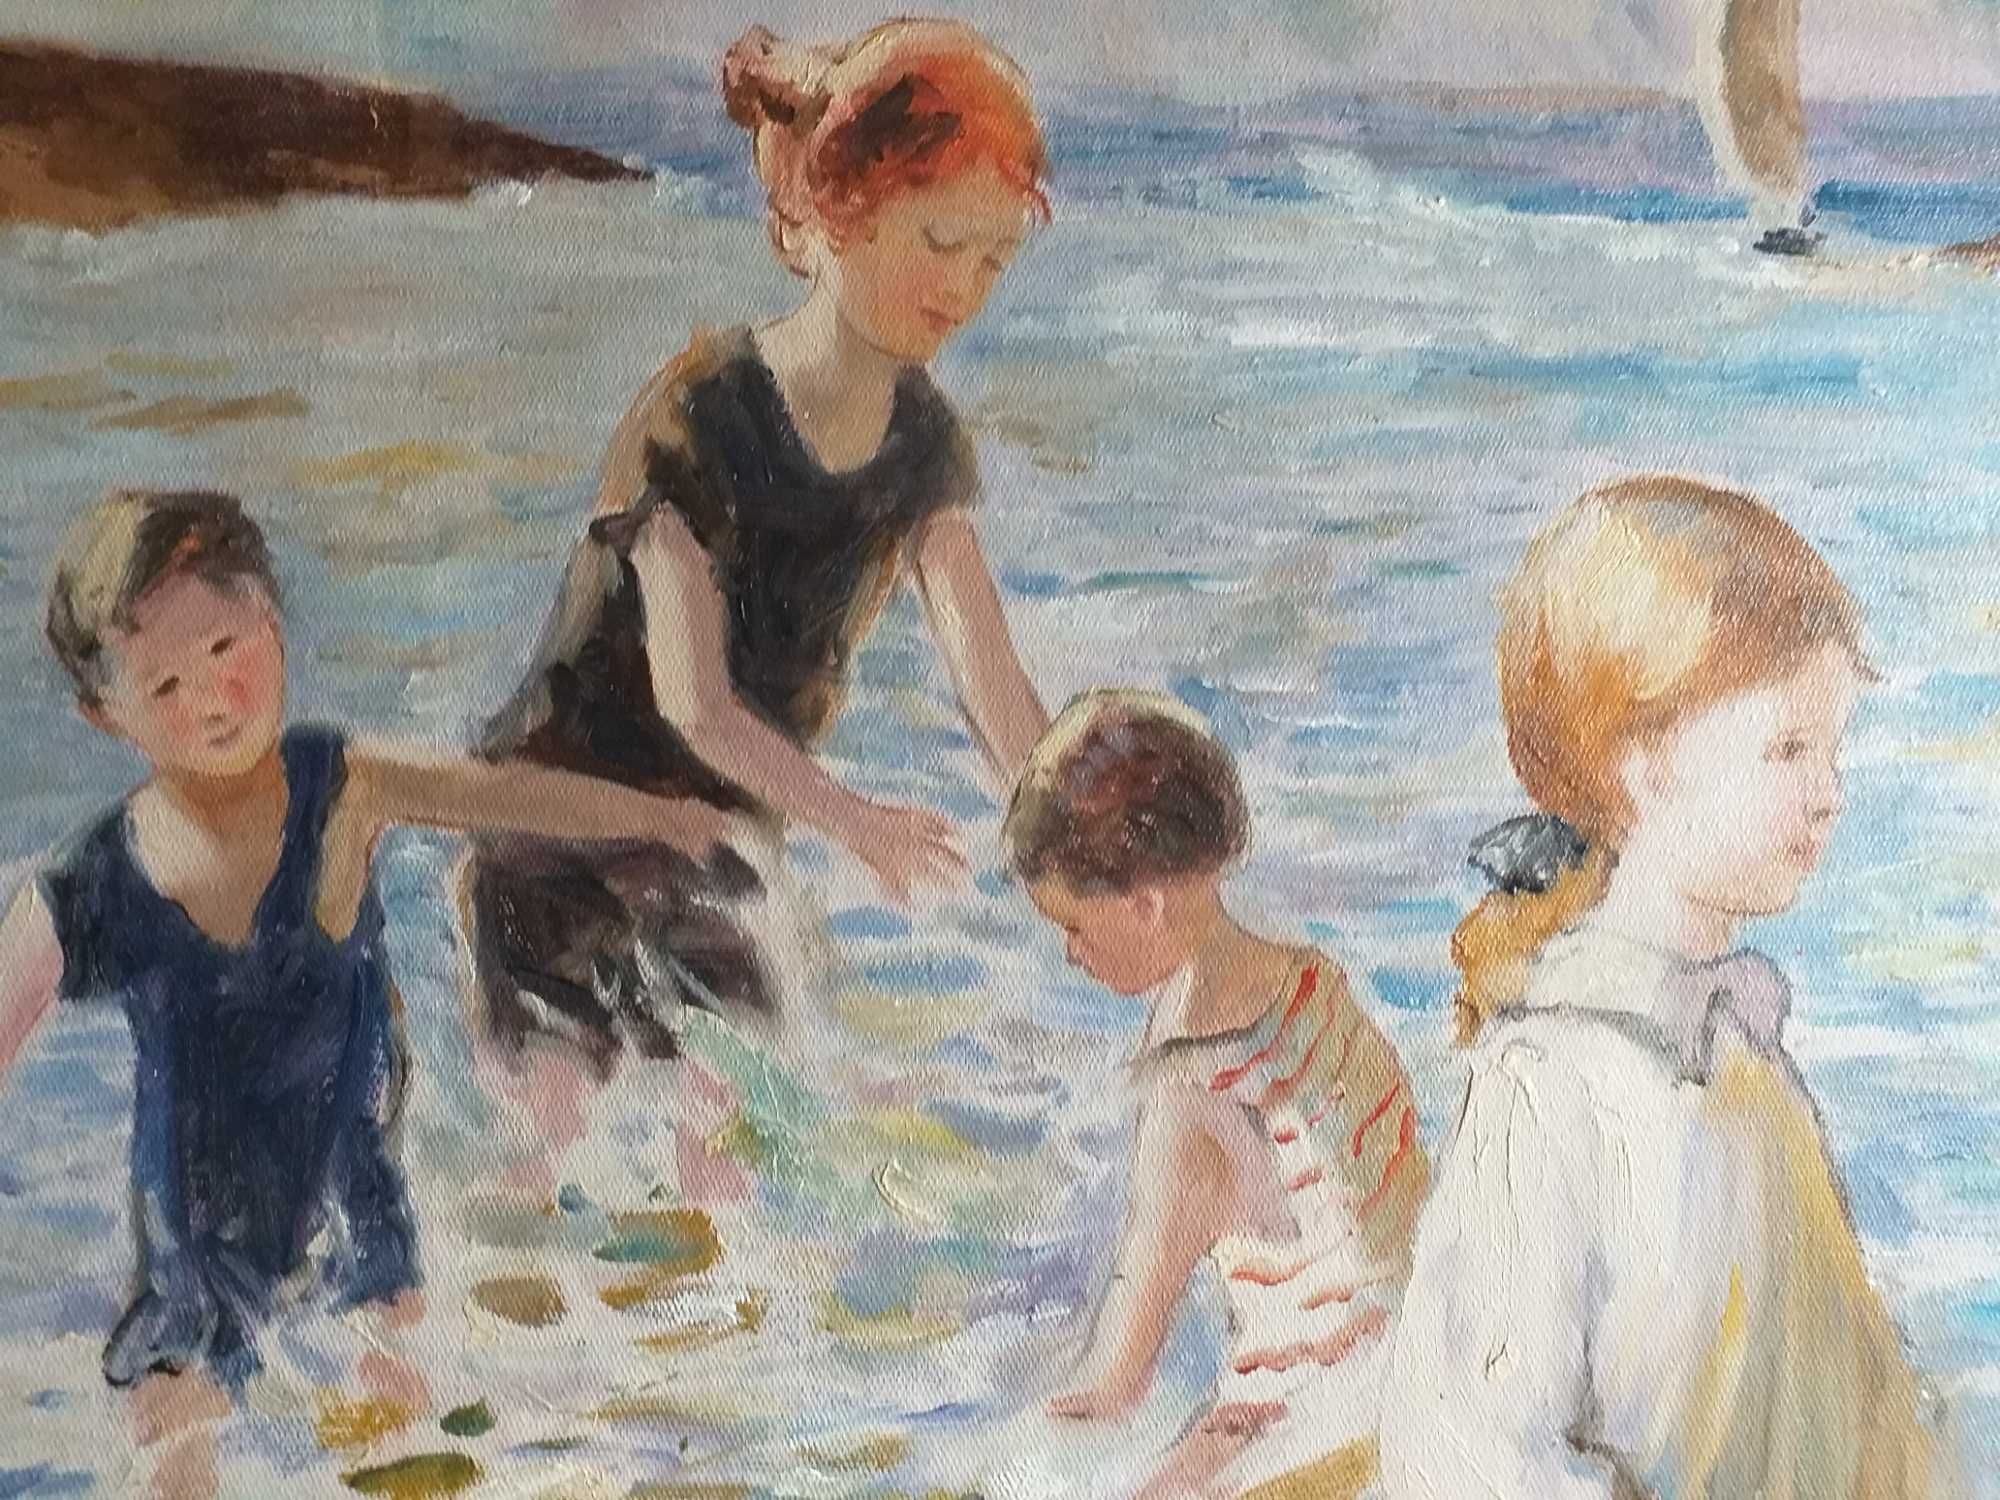 Pintura a óleo sobre tela 60x50 cm - São Martinho do Porto